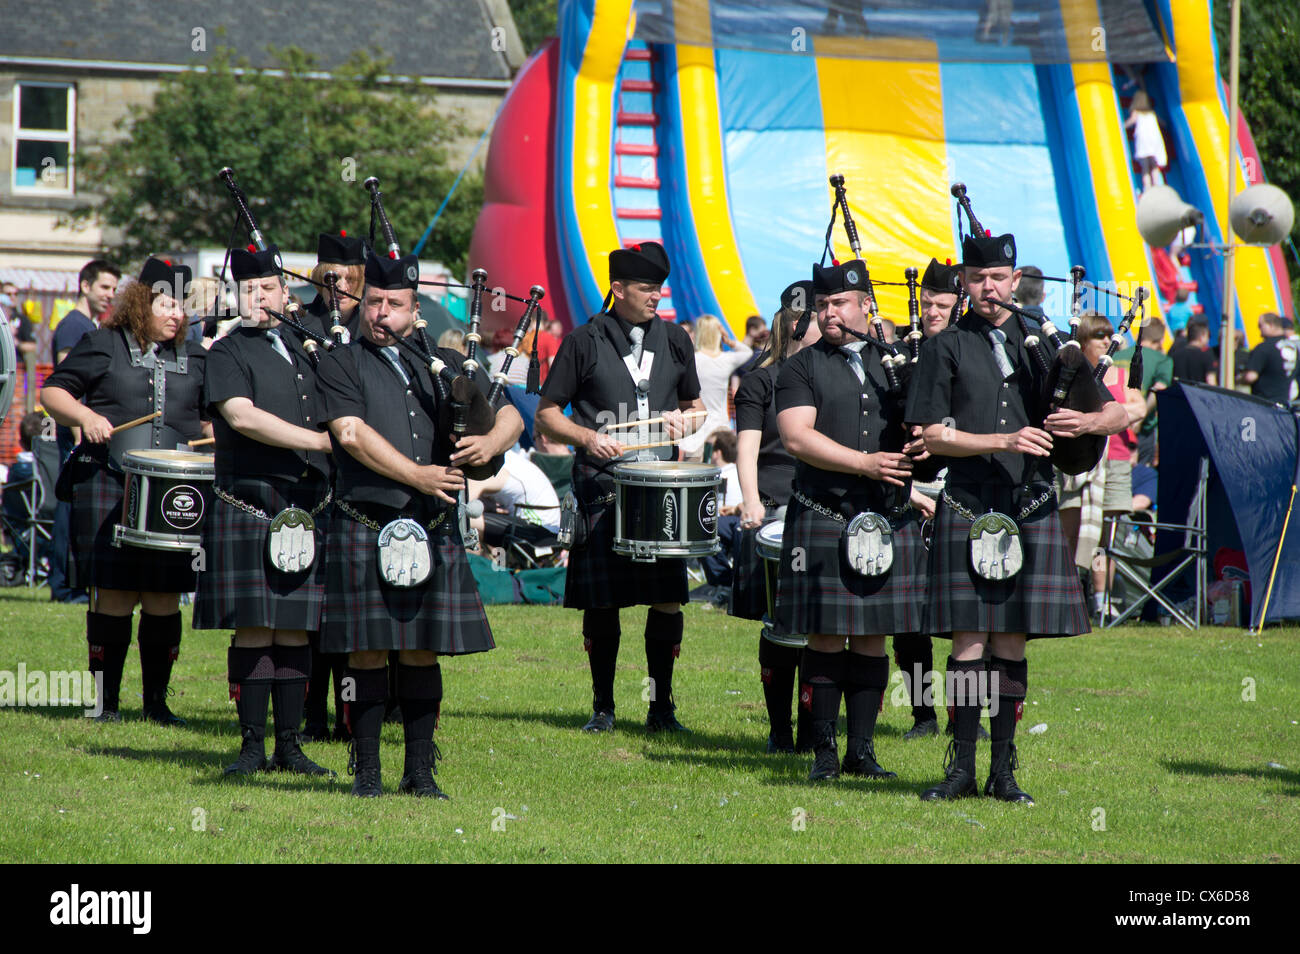 Highland Games Inverkeithing, Fife, Scotland, UK Stock Photo